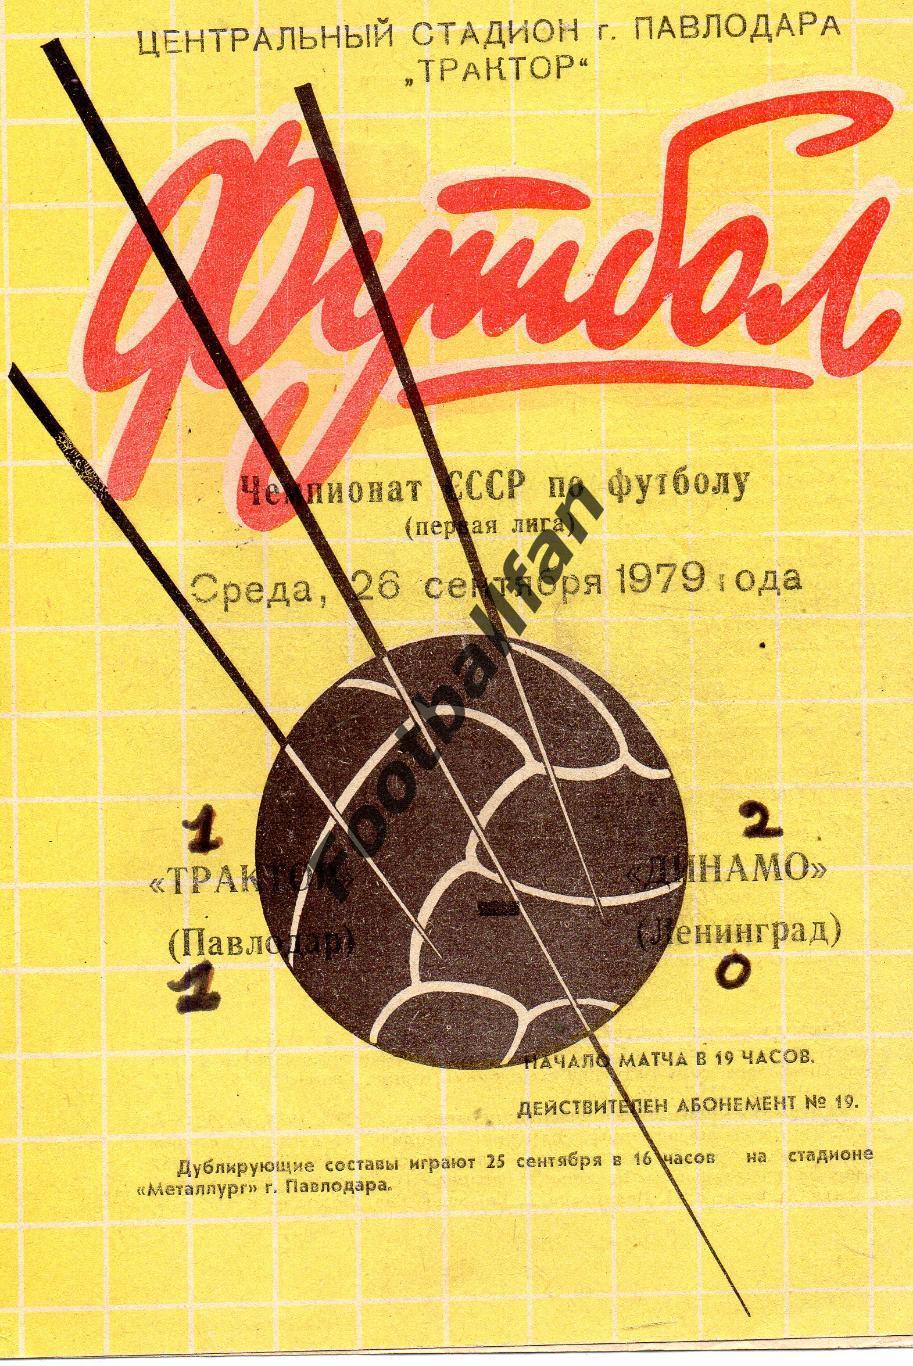 Трактор Павлодар - Динамо Ленинград 26.09.1979